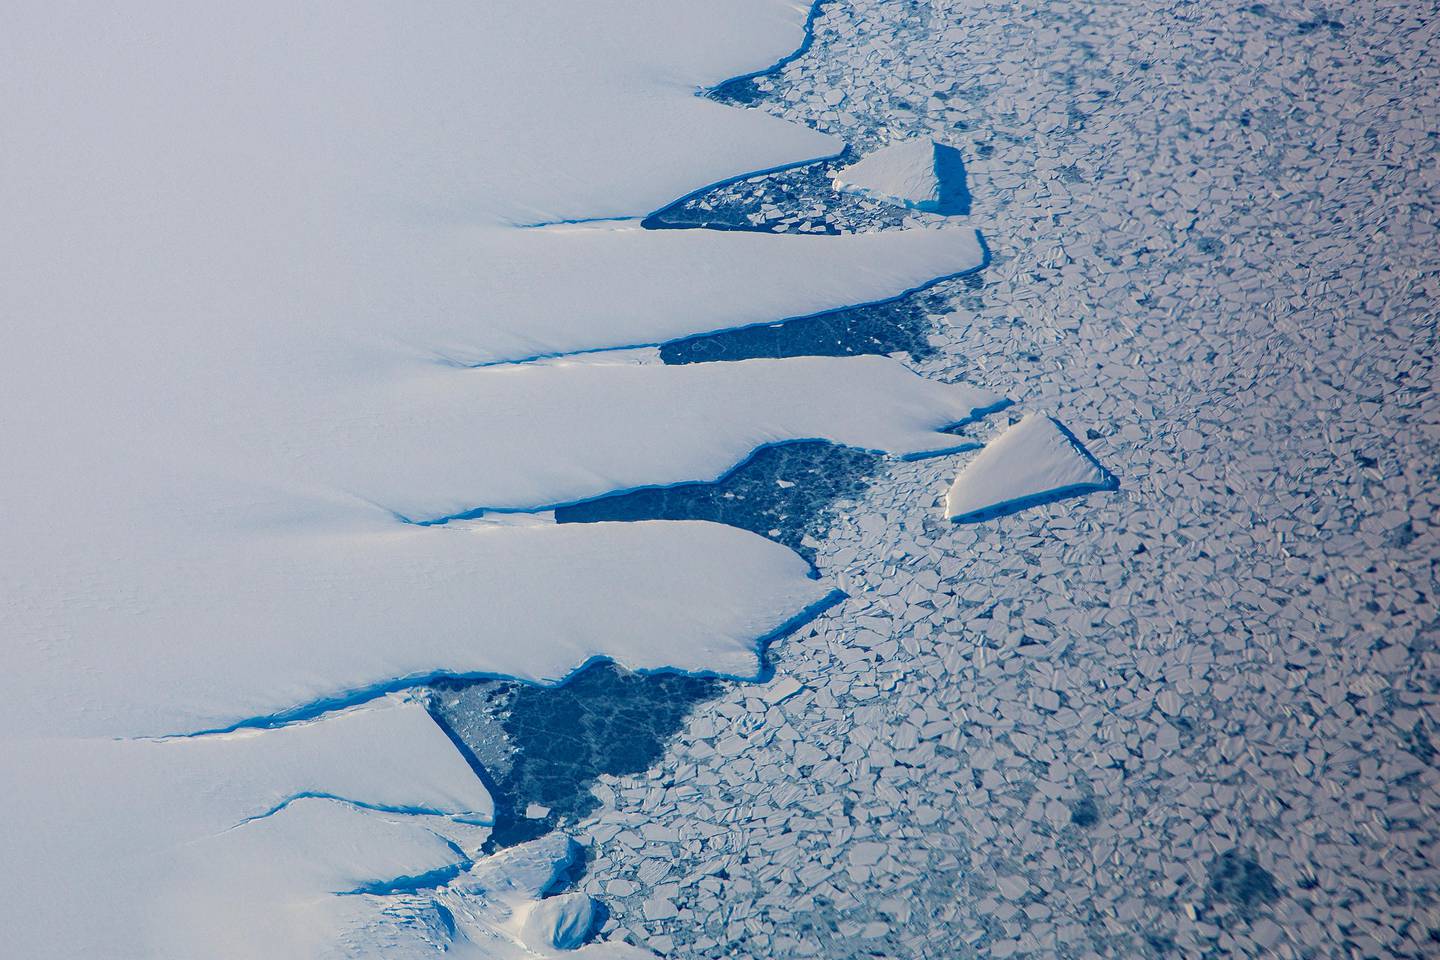 Troll, Antarktis 20150210.
Iskanten som markerer starten på det enorme området som er dekket av is i Antarktis. På det tykkeste er isen over 2000 meter.
Foto: Tore Meek / NTB scanpix